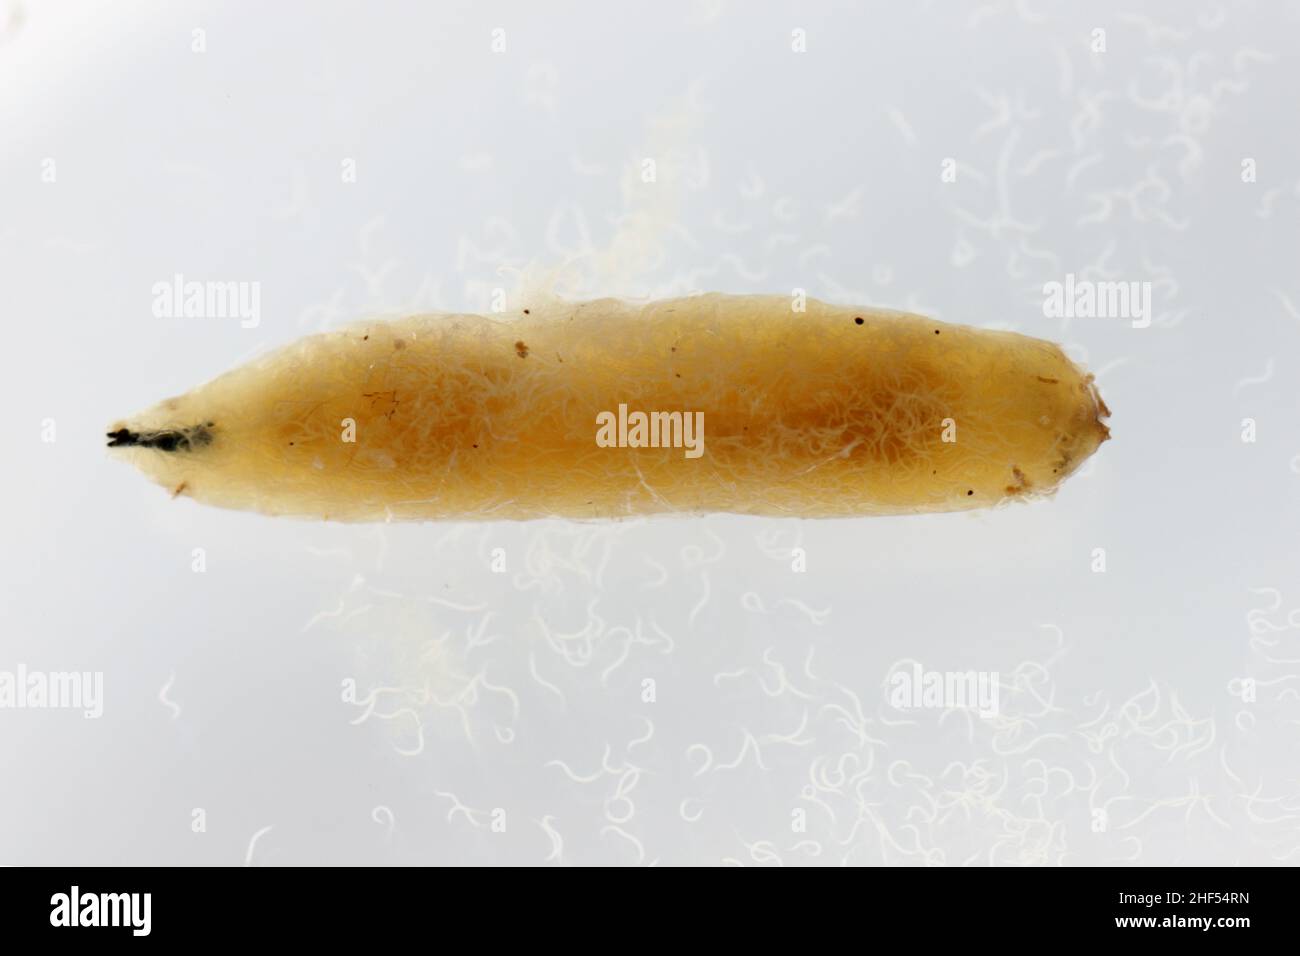 Corpo di larve di cavolo riempito con nematodi parassiti entomopatogeni -Steinernema sp. Anche i nematodi galleggiavano nell'acqua. Foto Stock